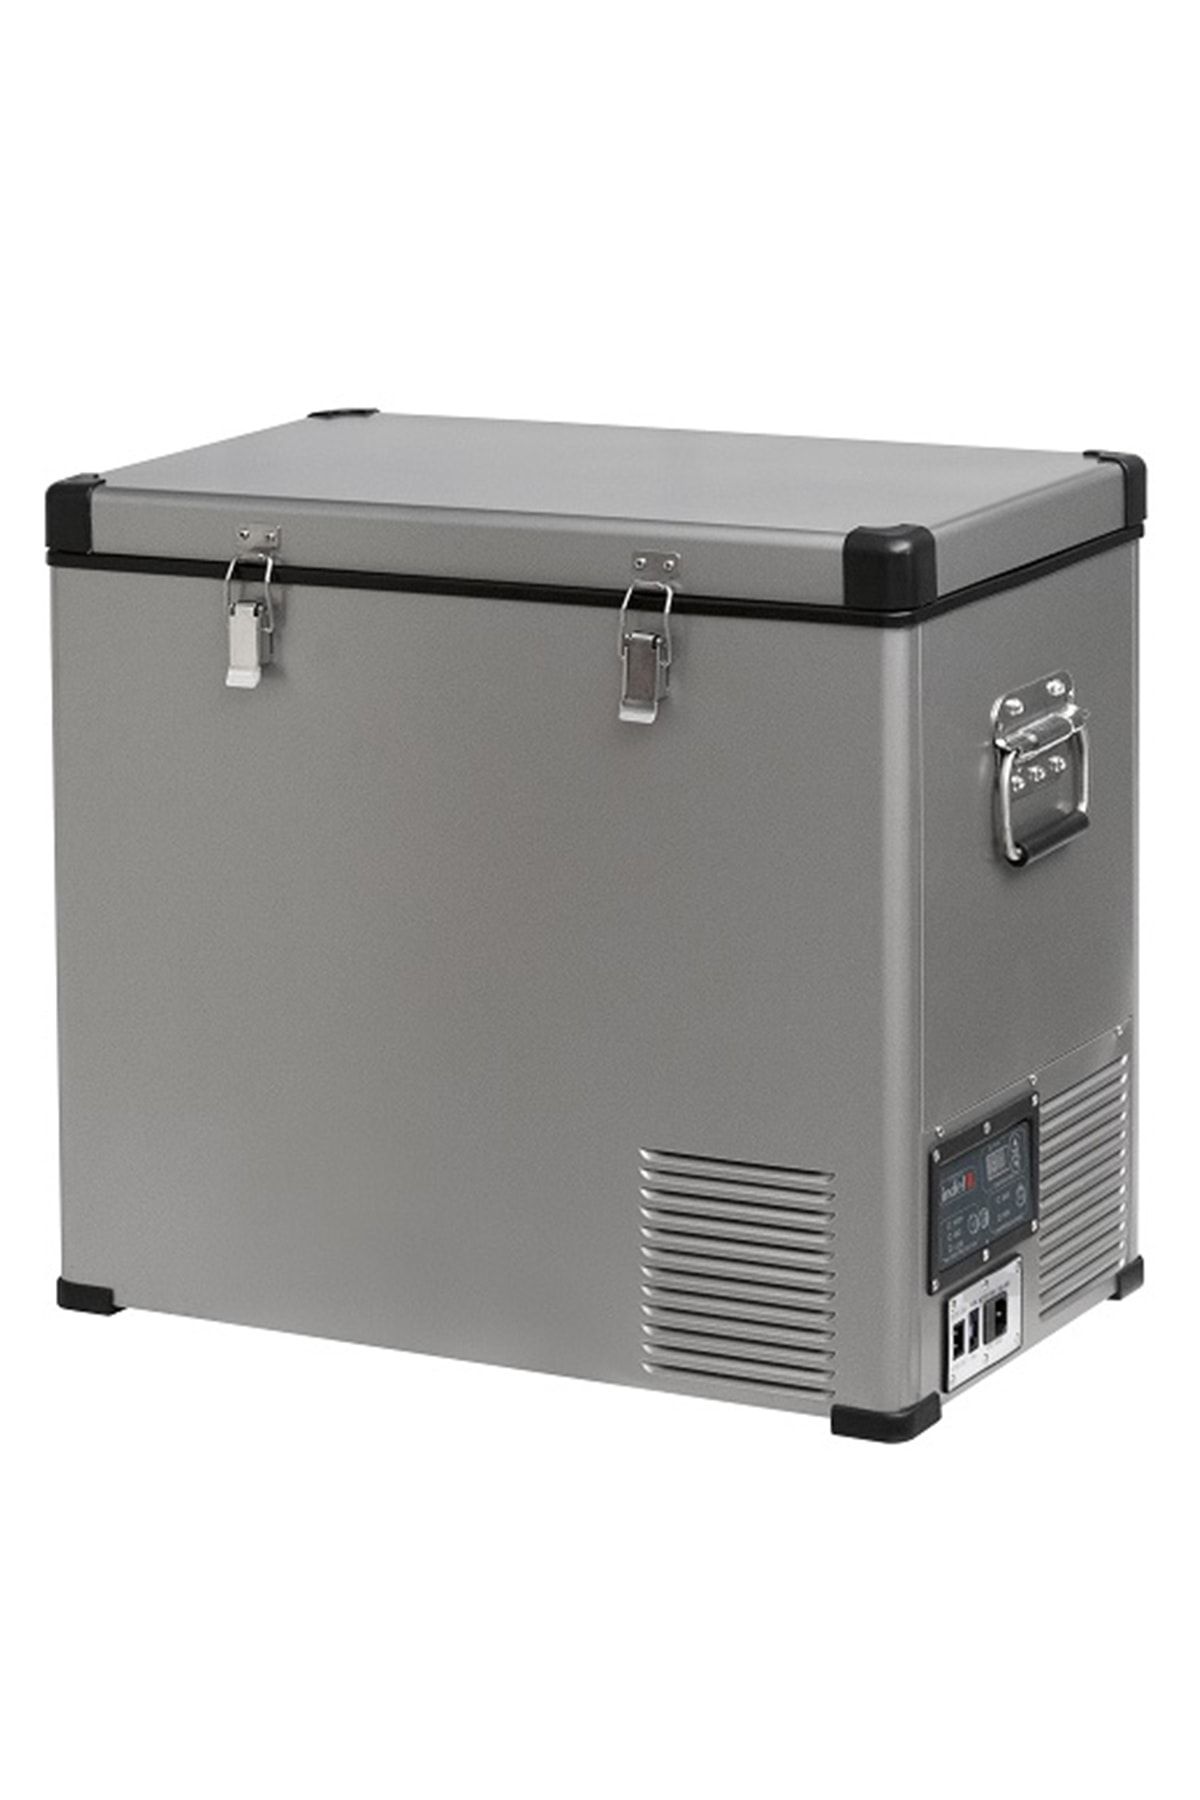 Indel-B Çelik Oto Buzdolabı Travel Box 60 lt Tb60